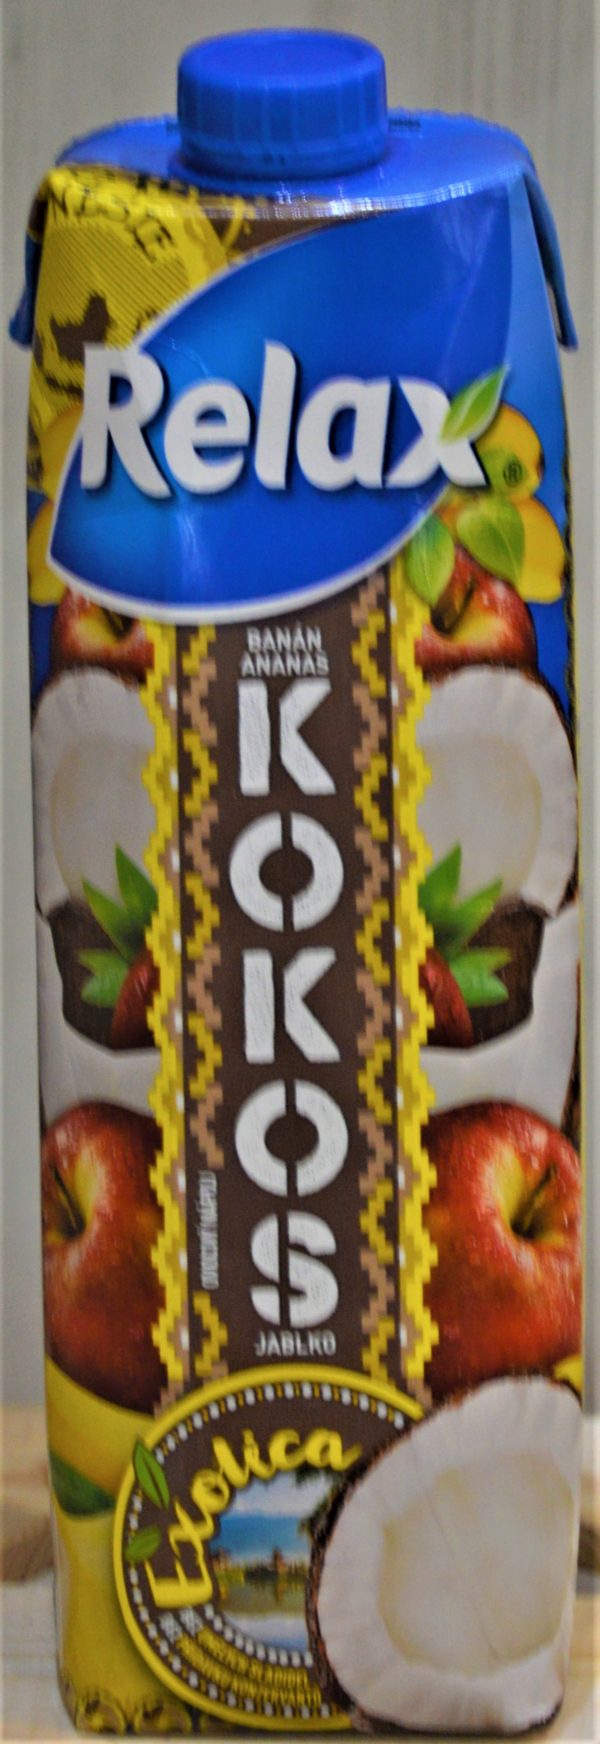 Kokos Relax Exotica